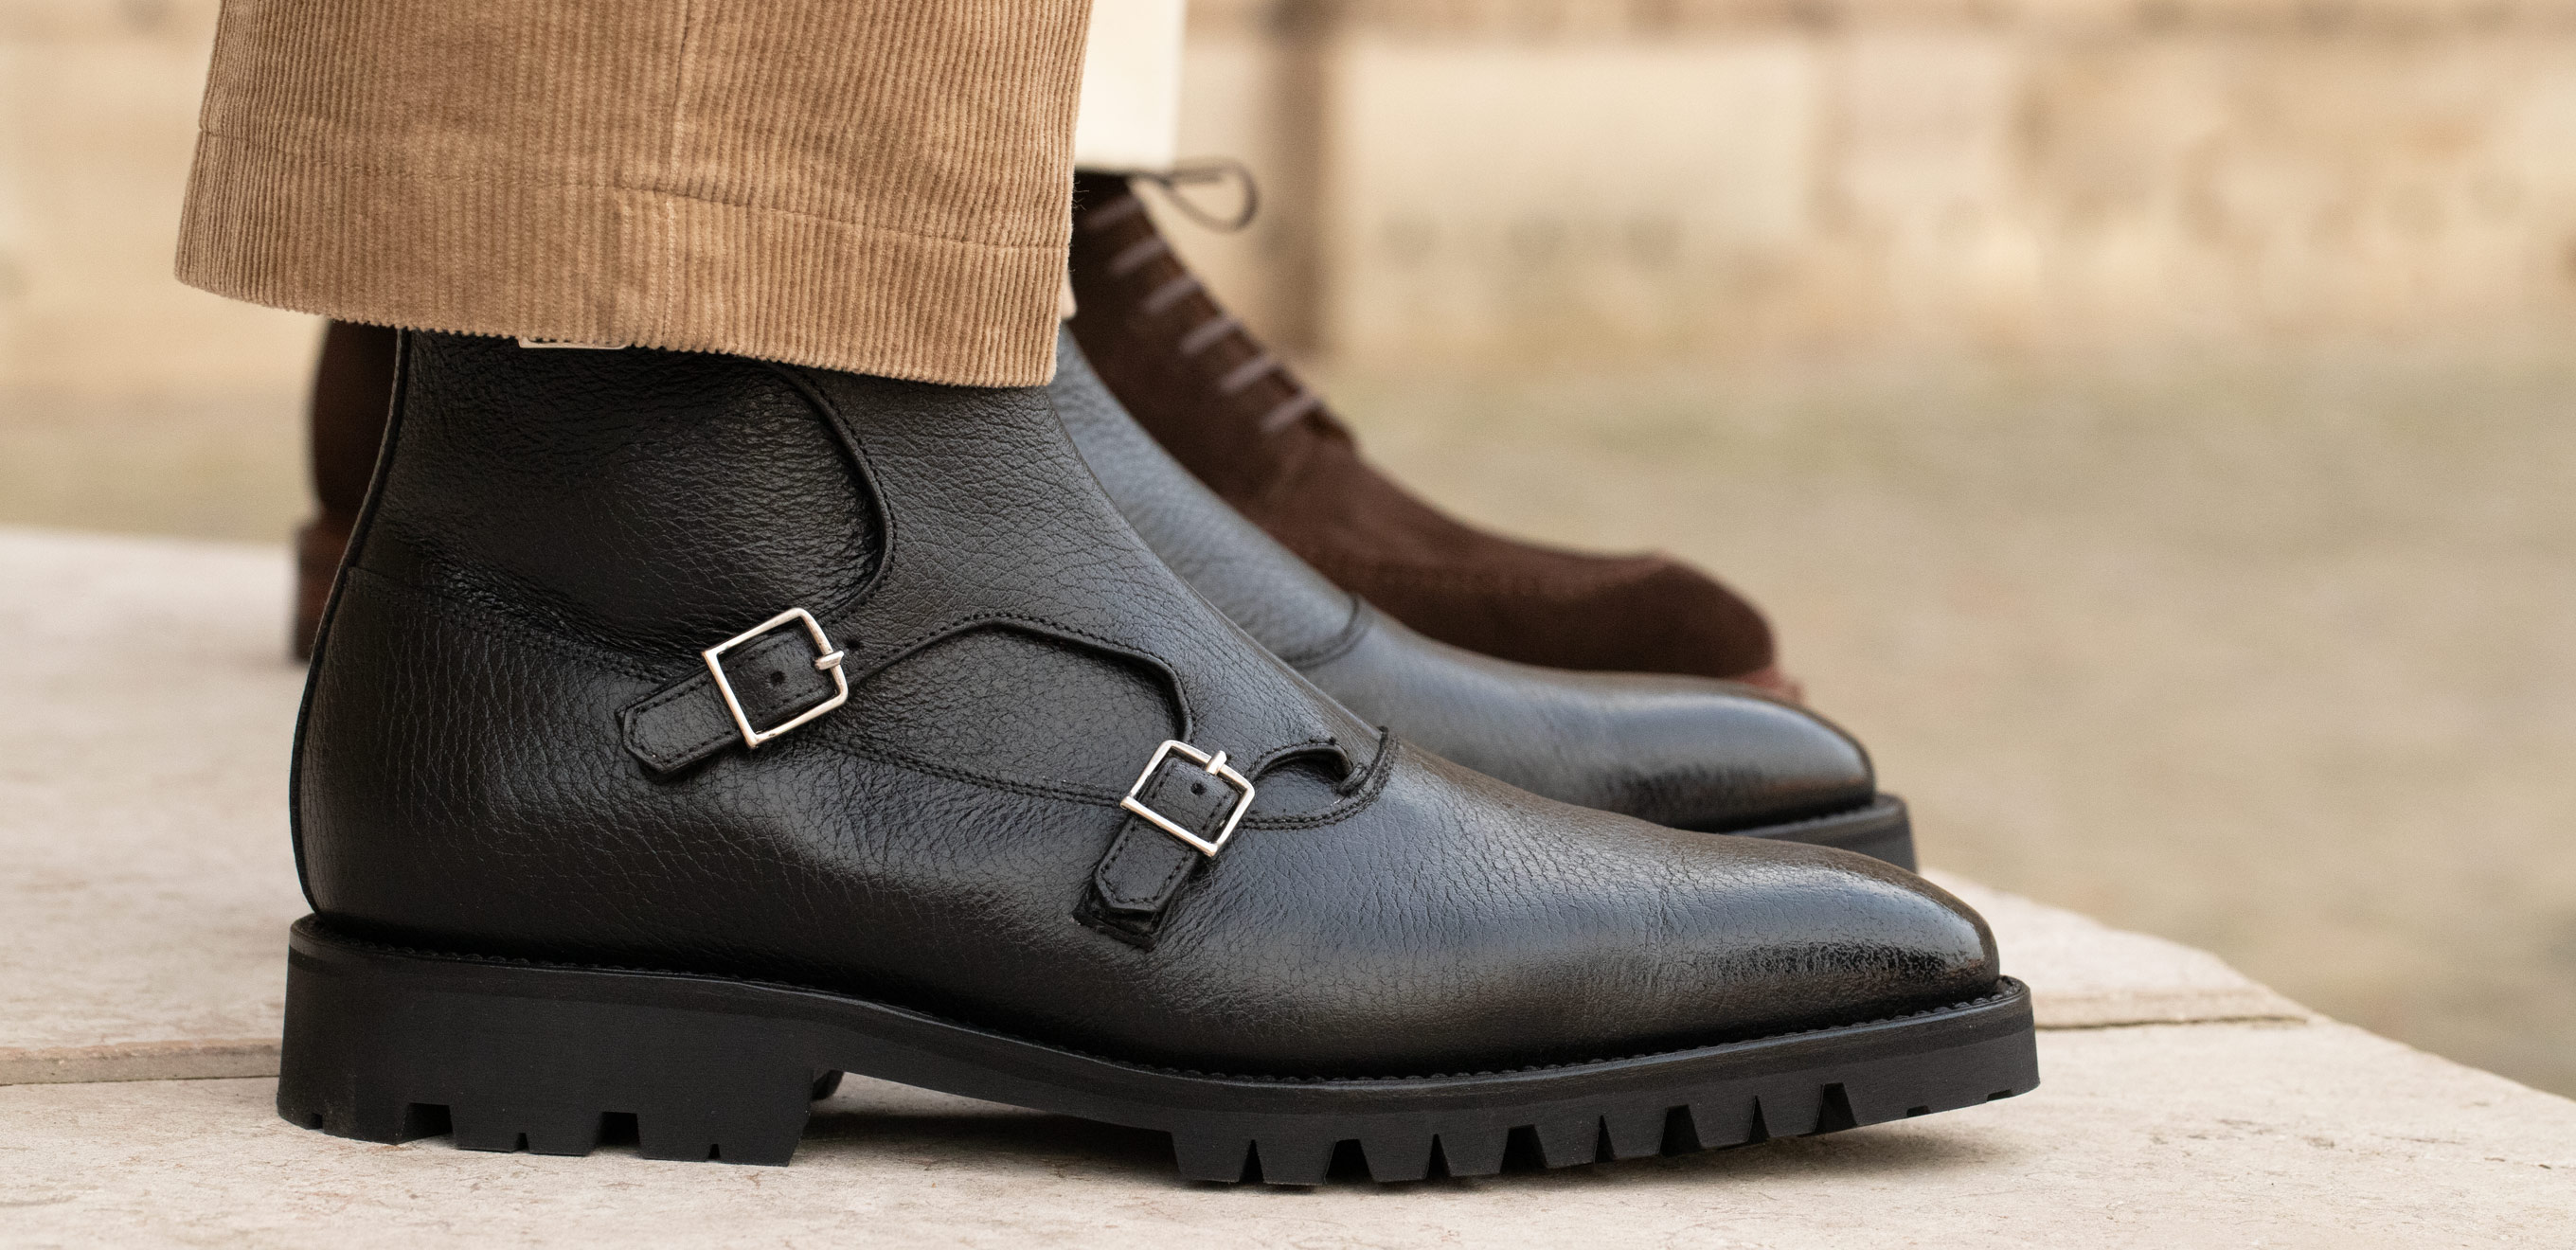 Soulier en Cuir Pour Homme - Chaussures de Luxe Noir Texture